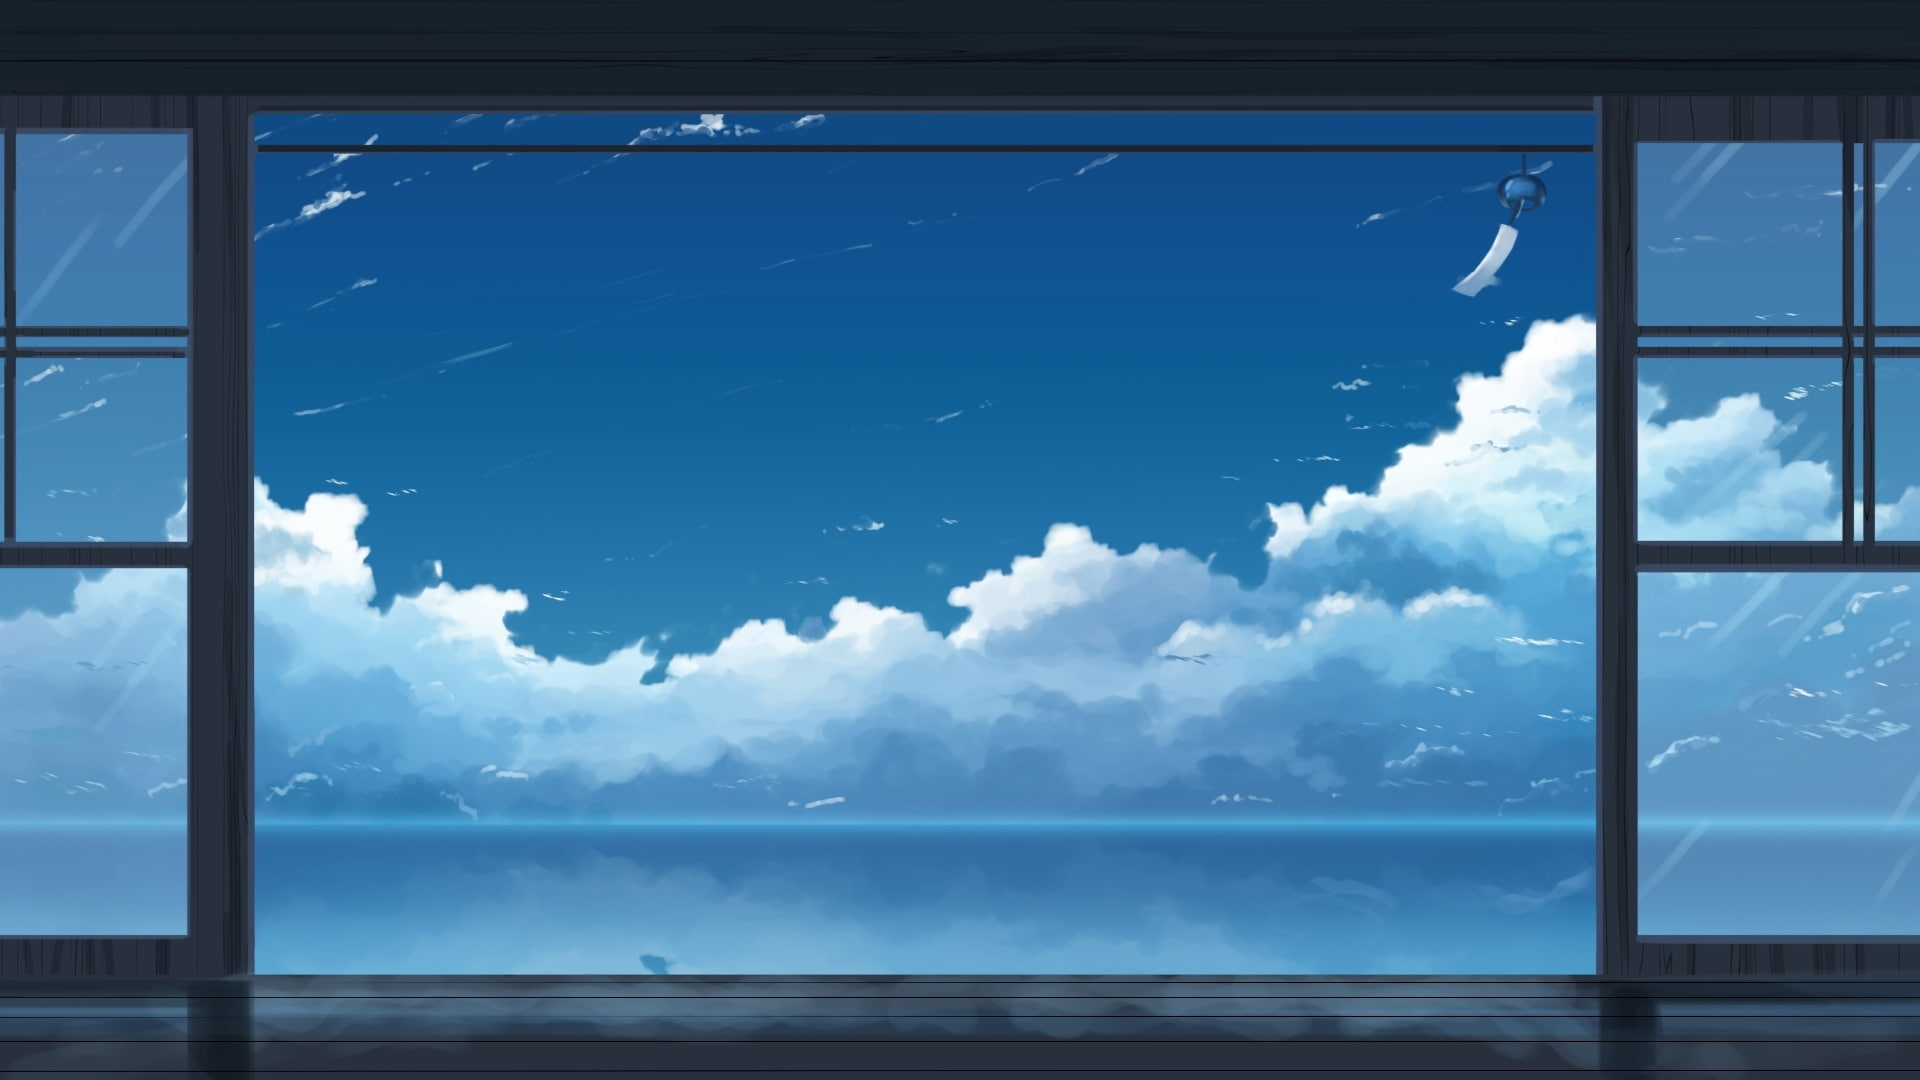 anime landscape, sky, scenic, clouds, cloud - sky, window, glass - material